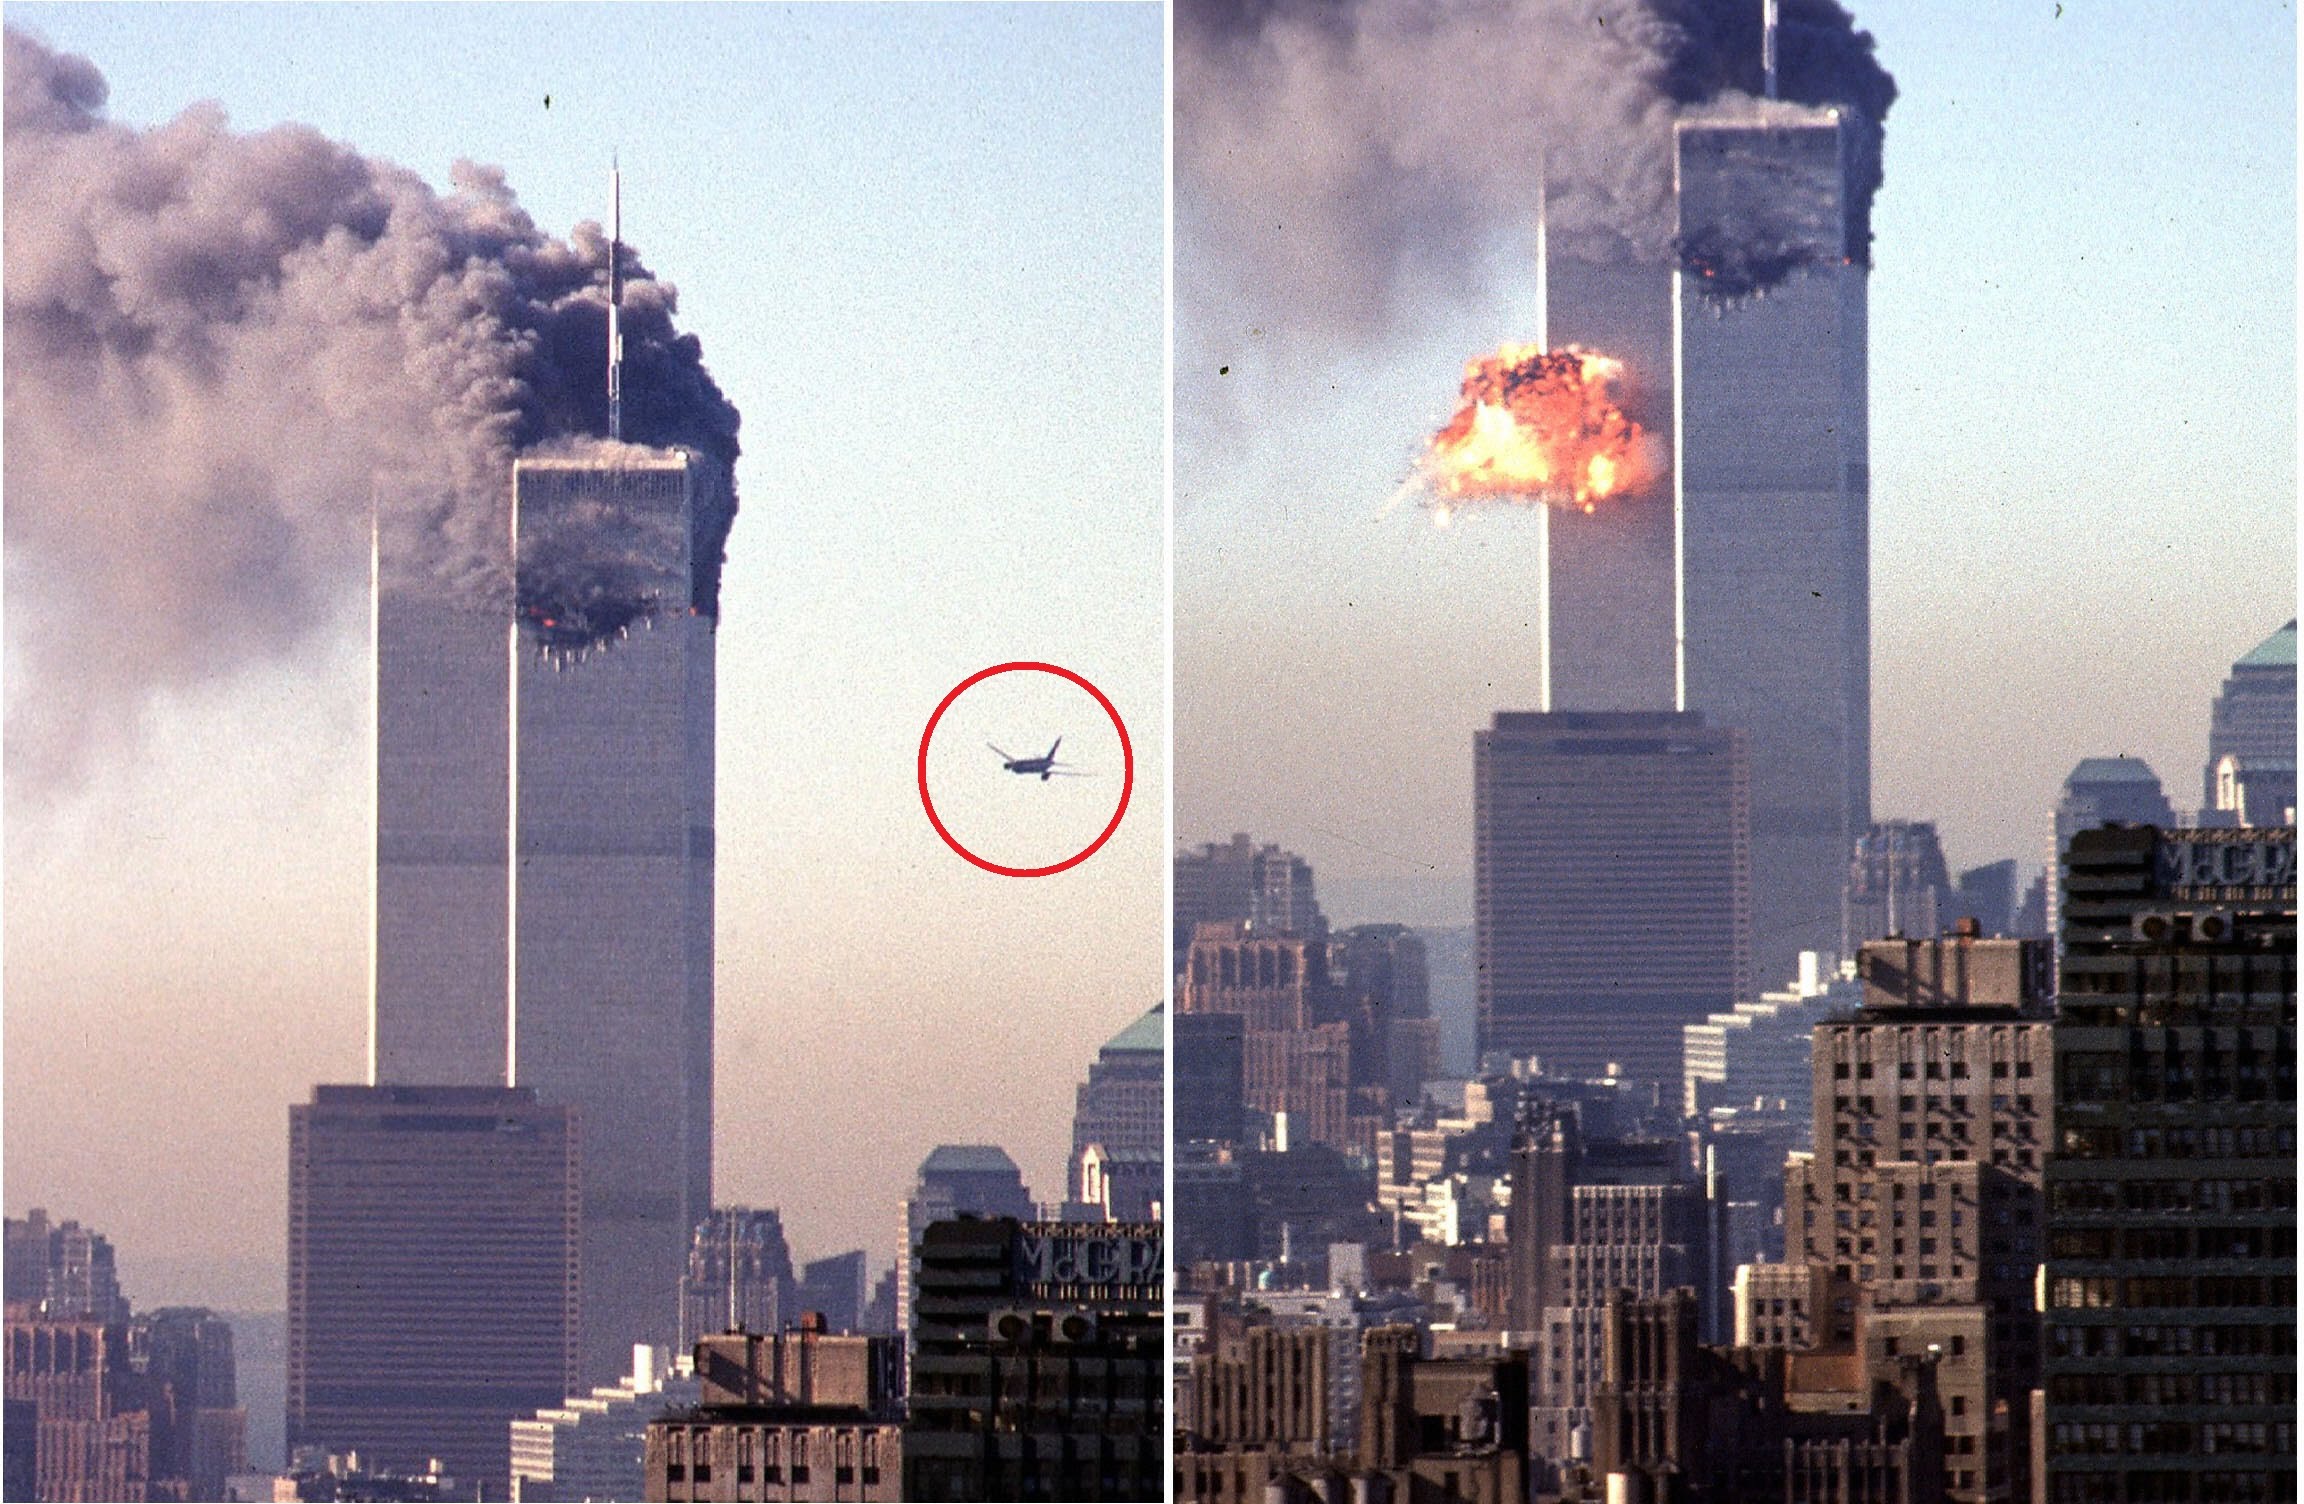 2001 год 11 сентября башни. ВТЦ Нью-Йорк 2001. Башни-Близнецы 11 сентября 2001. Башни ВТЦ В Нью-Йорке. Теракт 11 сентября 2001 года башни Близнецы.